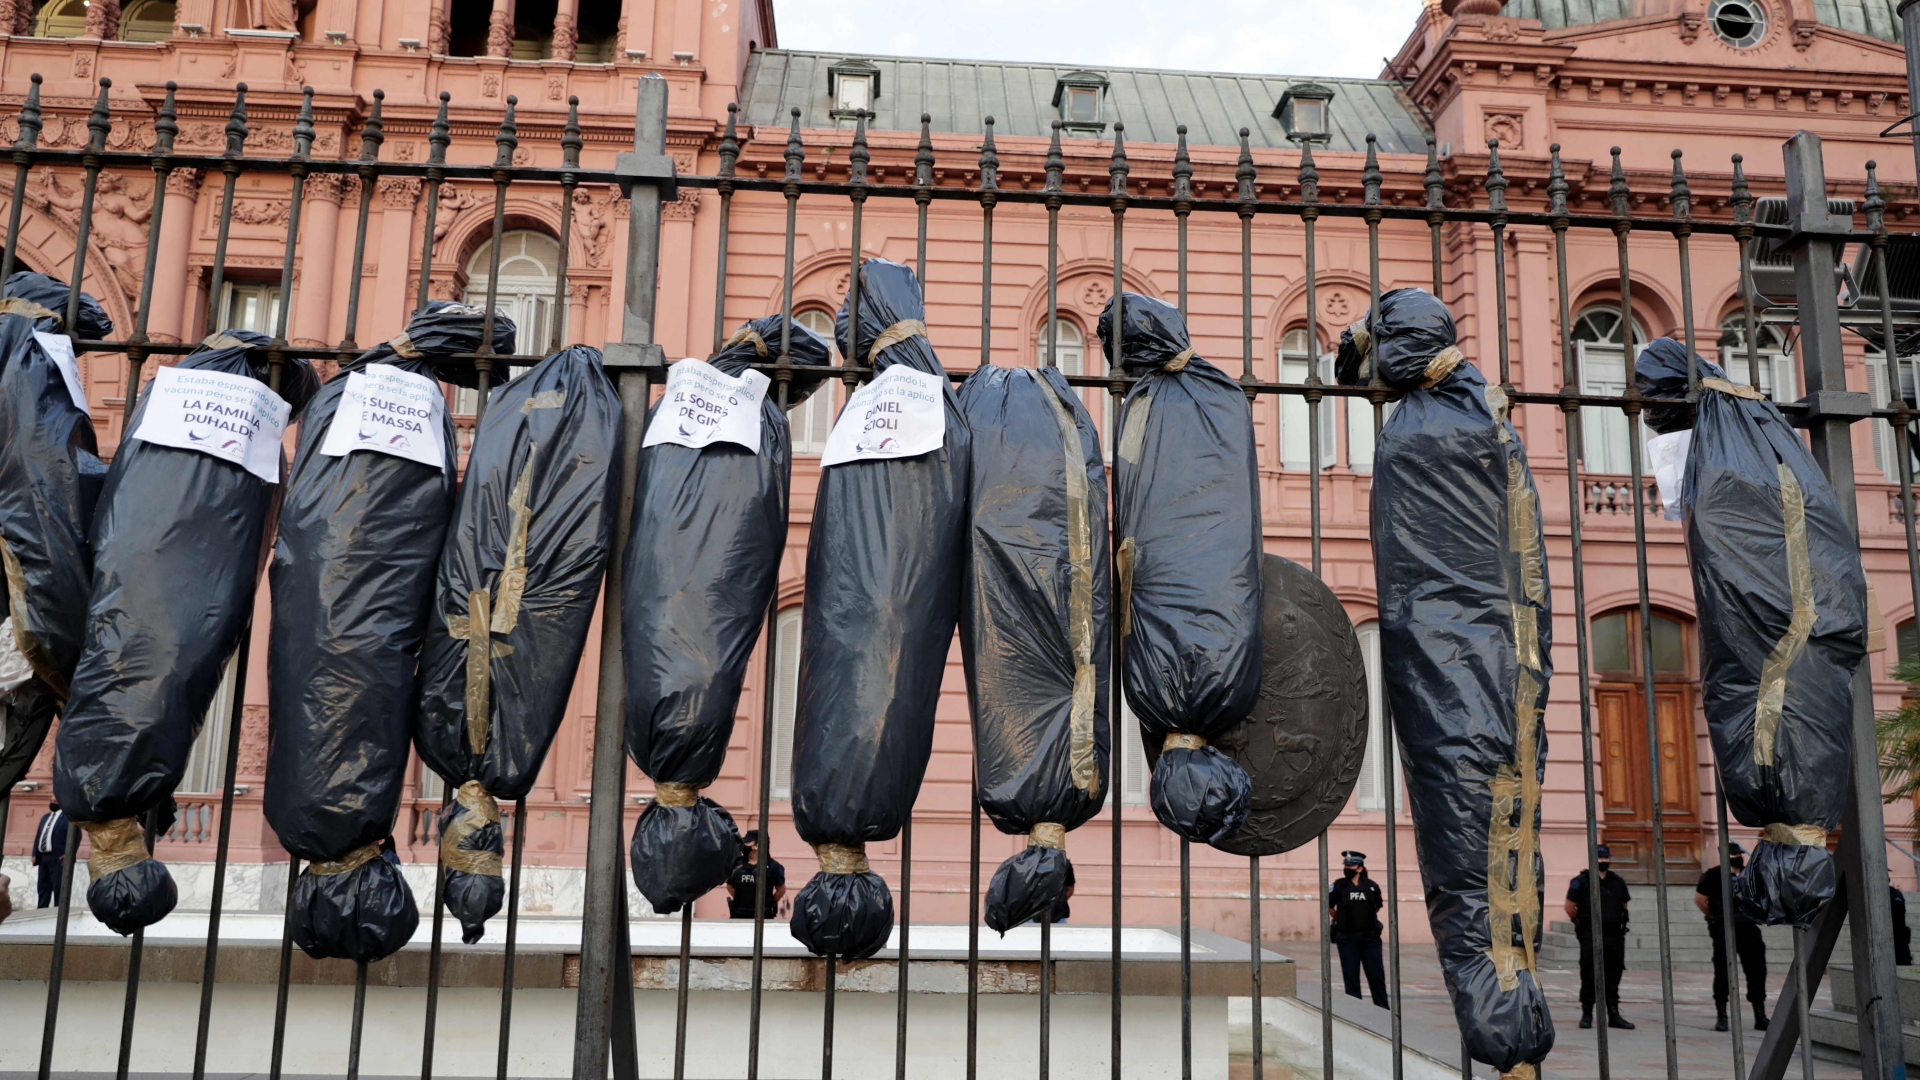 Am Zaun des argentinischen Regierungssitzes Casa Rosada in Buenos Aires befestigten Demonstranten Attrappen von Leichensäcke mit den Namen der Geimpften aus dem Umfeld der Regierung. | AFP